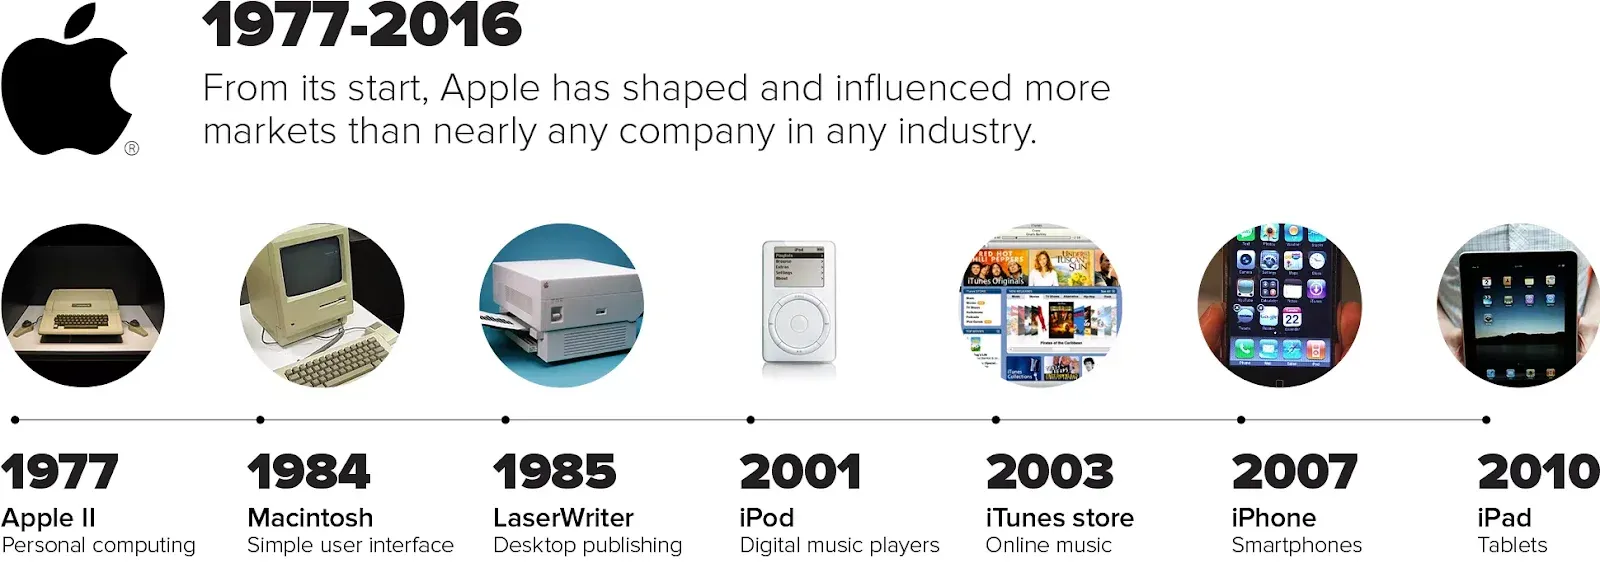 Die Zeitleiste der Apple Innovationen | Quelle: cnet.com